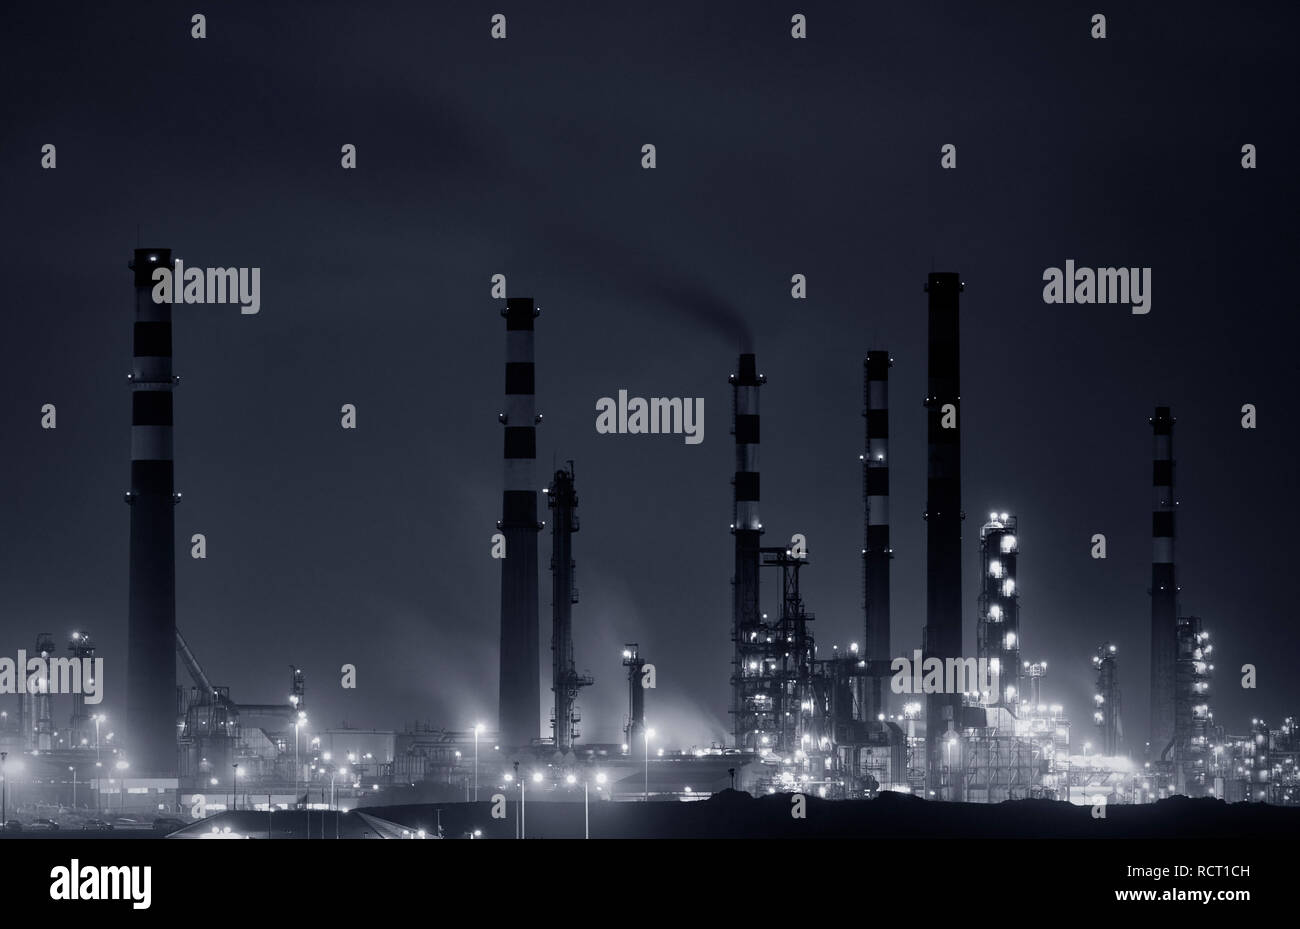 Panorama d'une partie d'une grande raffinerie par nuit. Converti en noir et blanc. Tons bleu. Banque D'Images